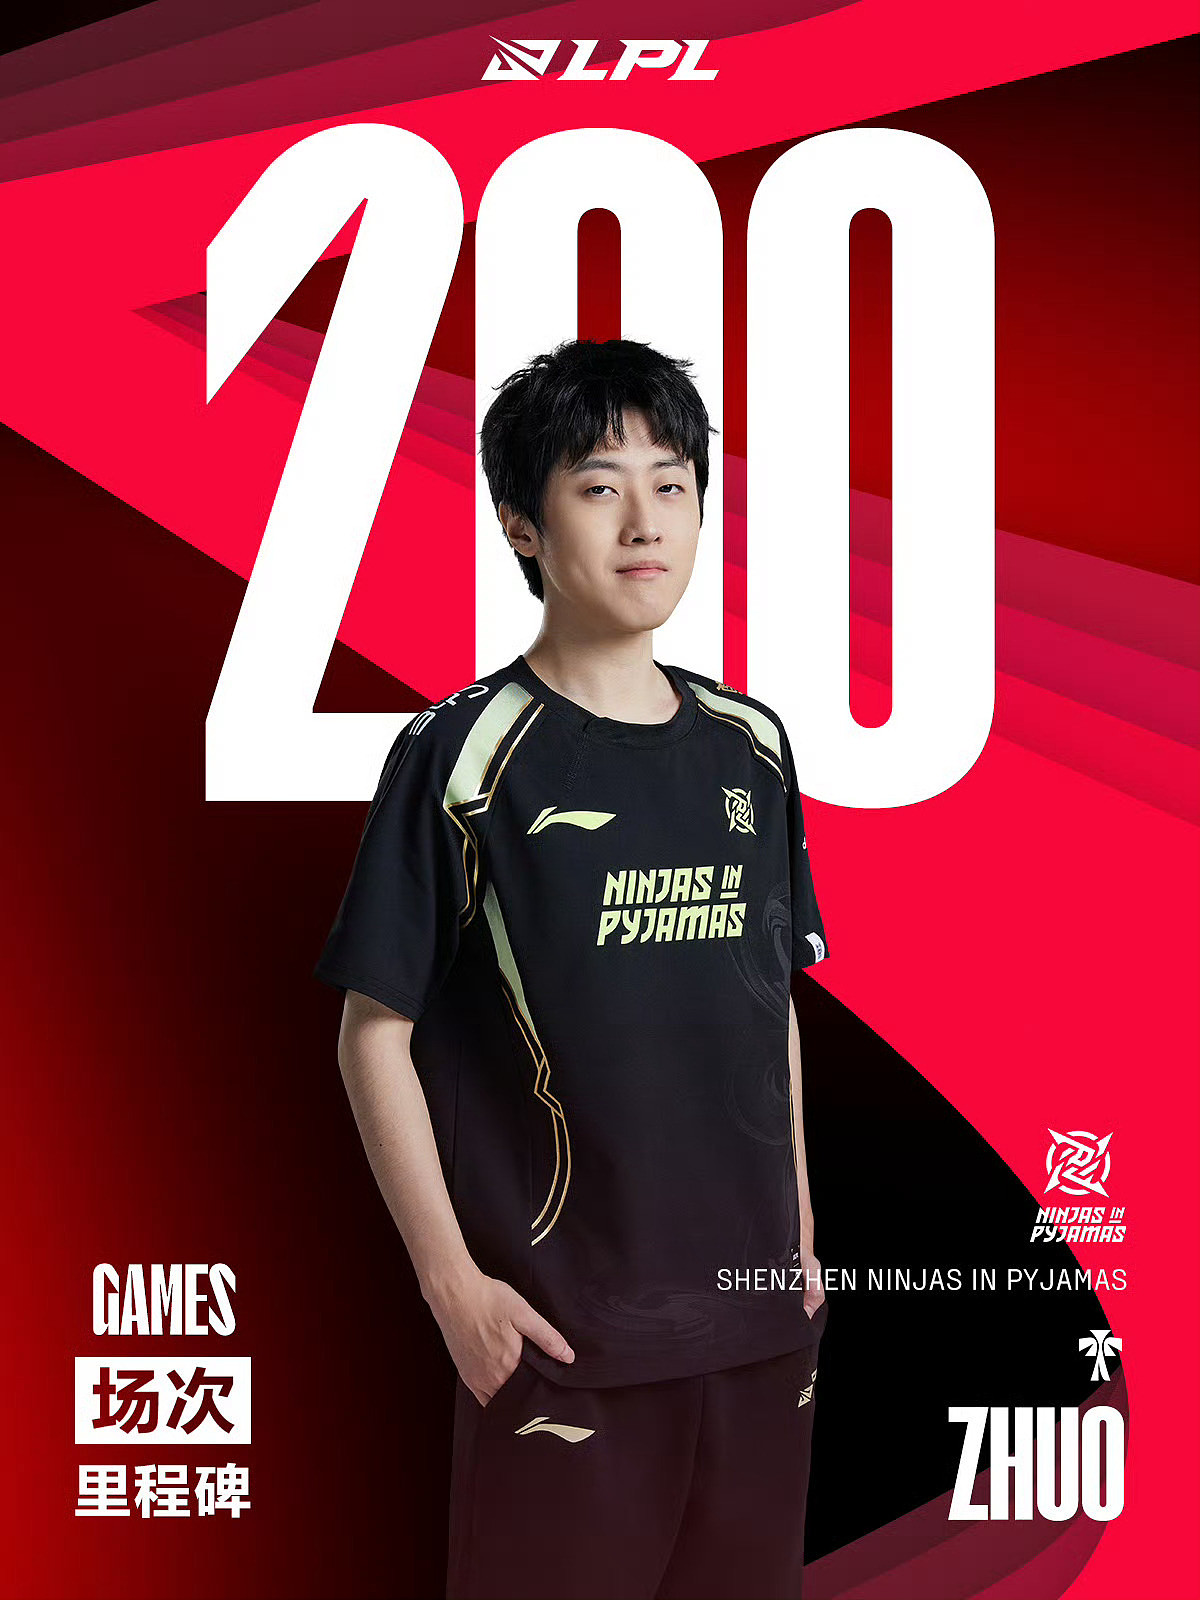 里程碑：Zhuo达成LPL200出场成就 是辅助位第25位达成该成就的选手 - 1